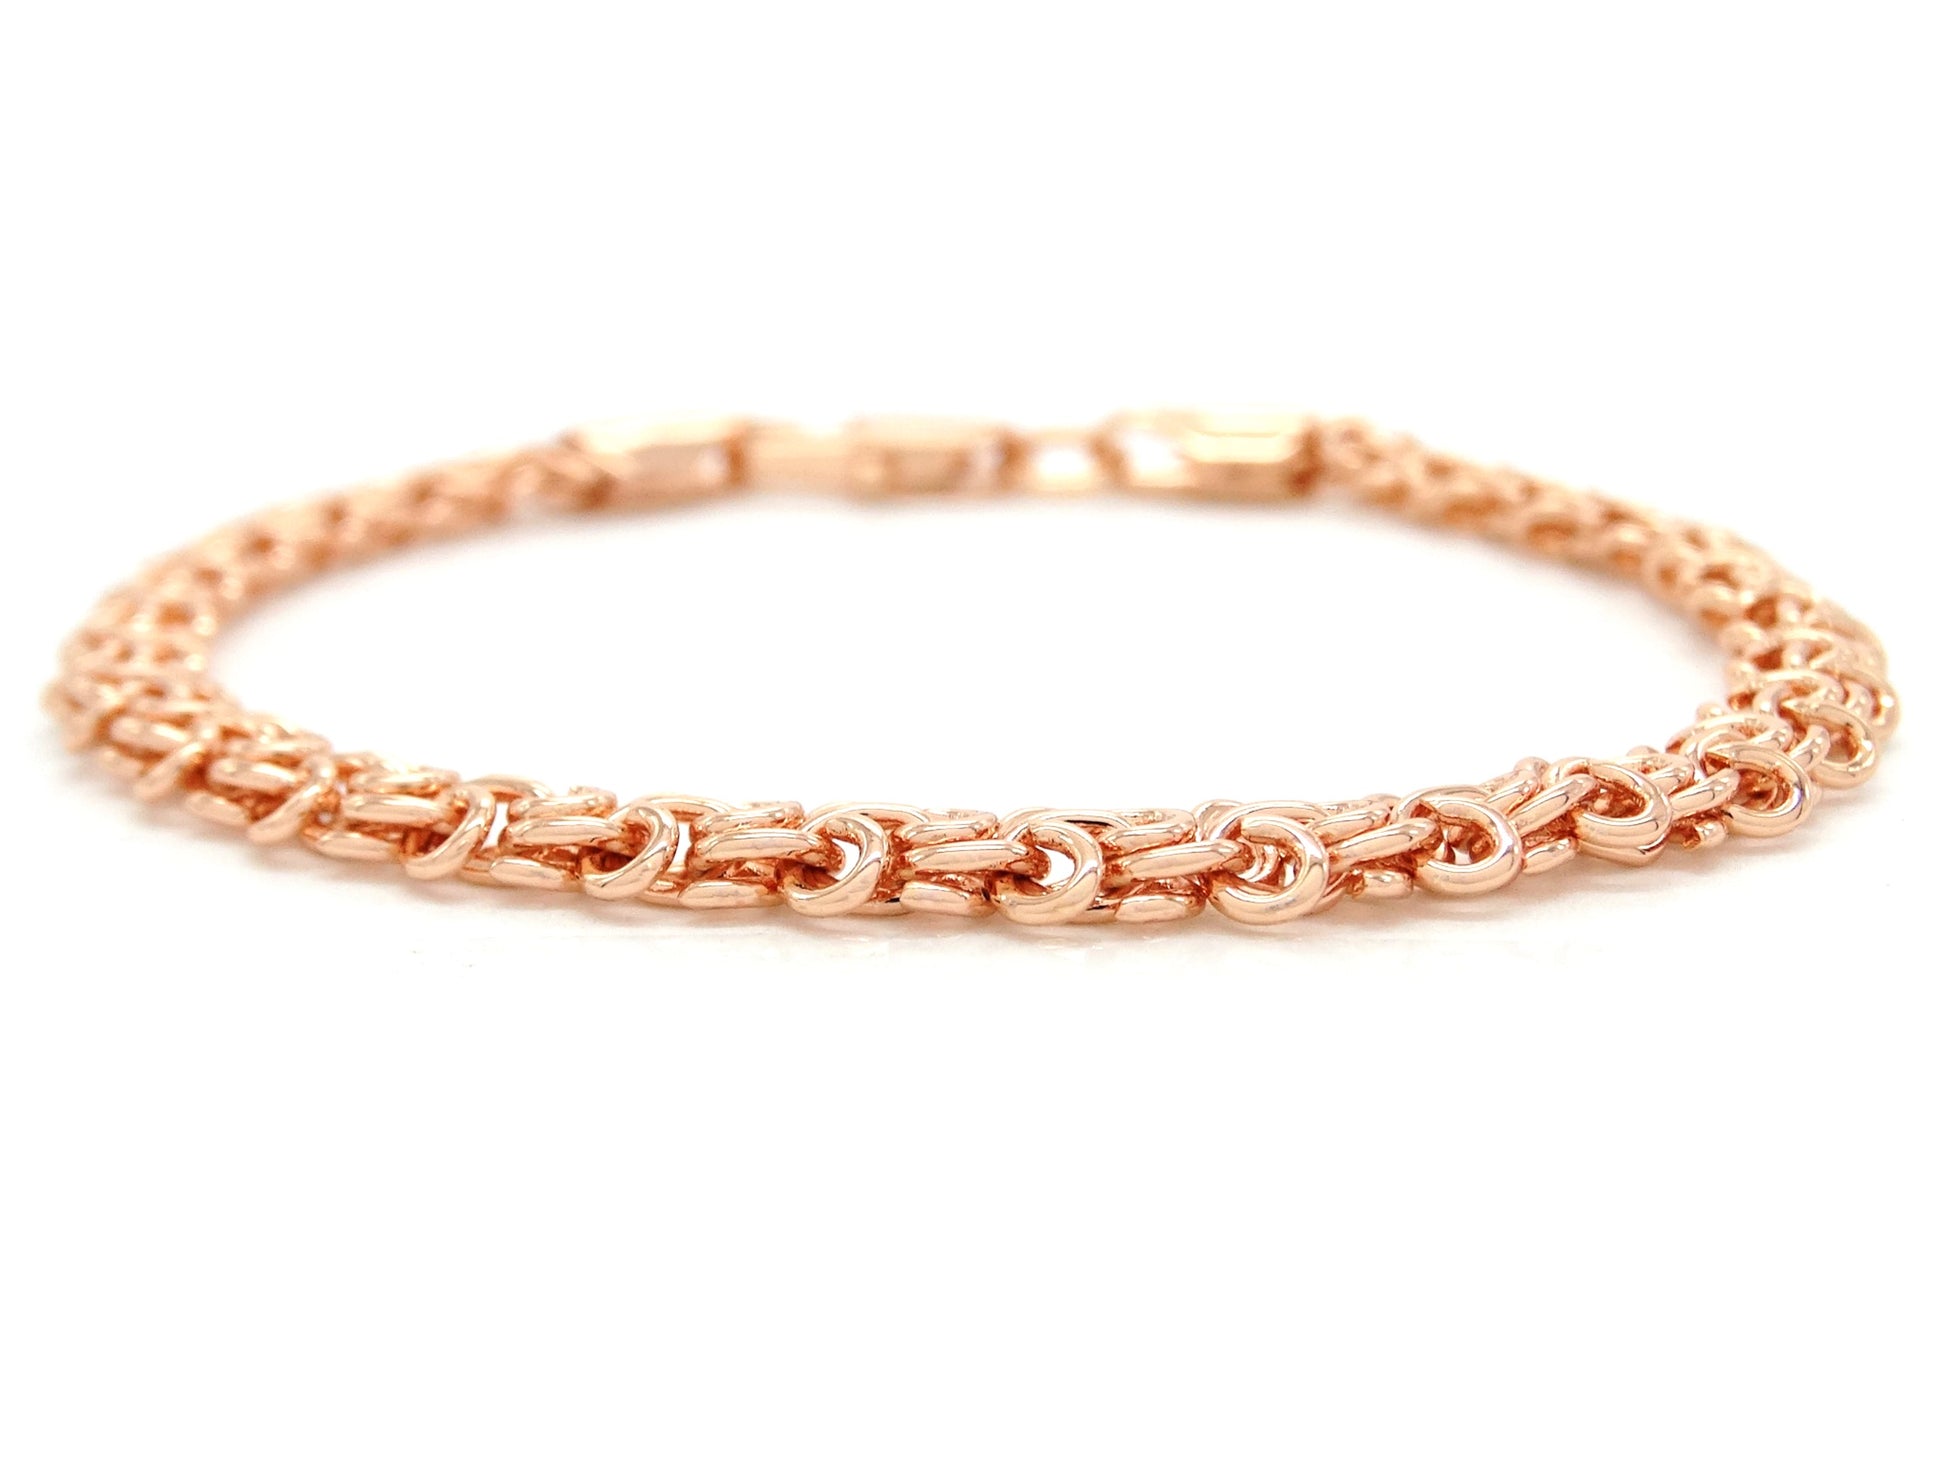 Rose gold interweaving chain bracelet MAIN